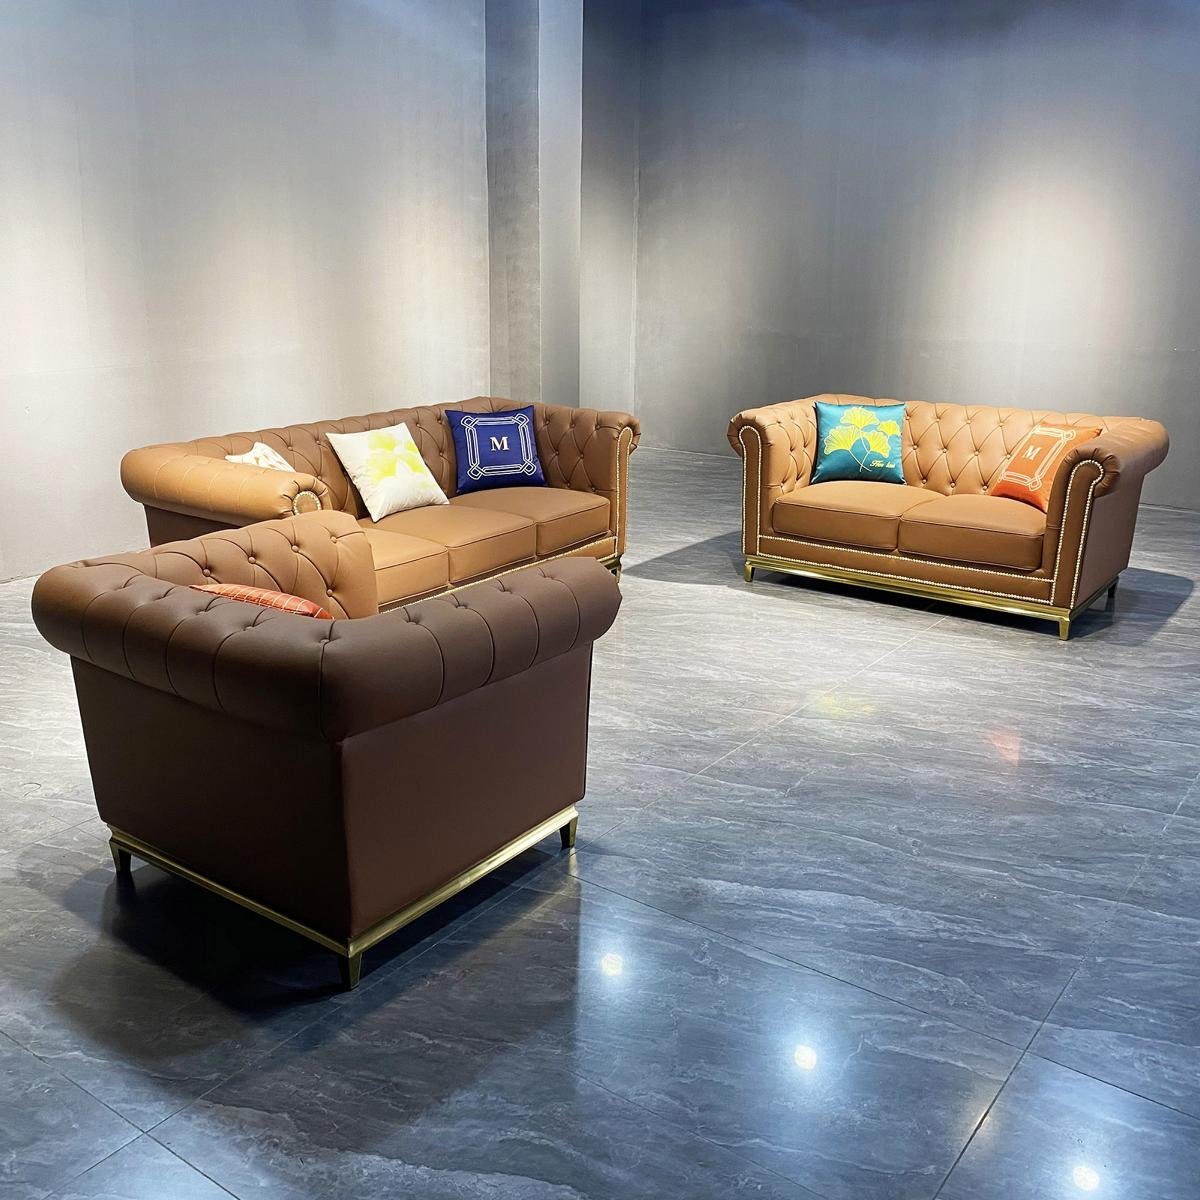 JVmoebel Sofa Orange Chesterfield Luxus Set Garnitur 3+2+1, Wohnzimmer Made Sofa Braun in Europe